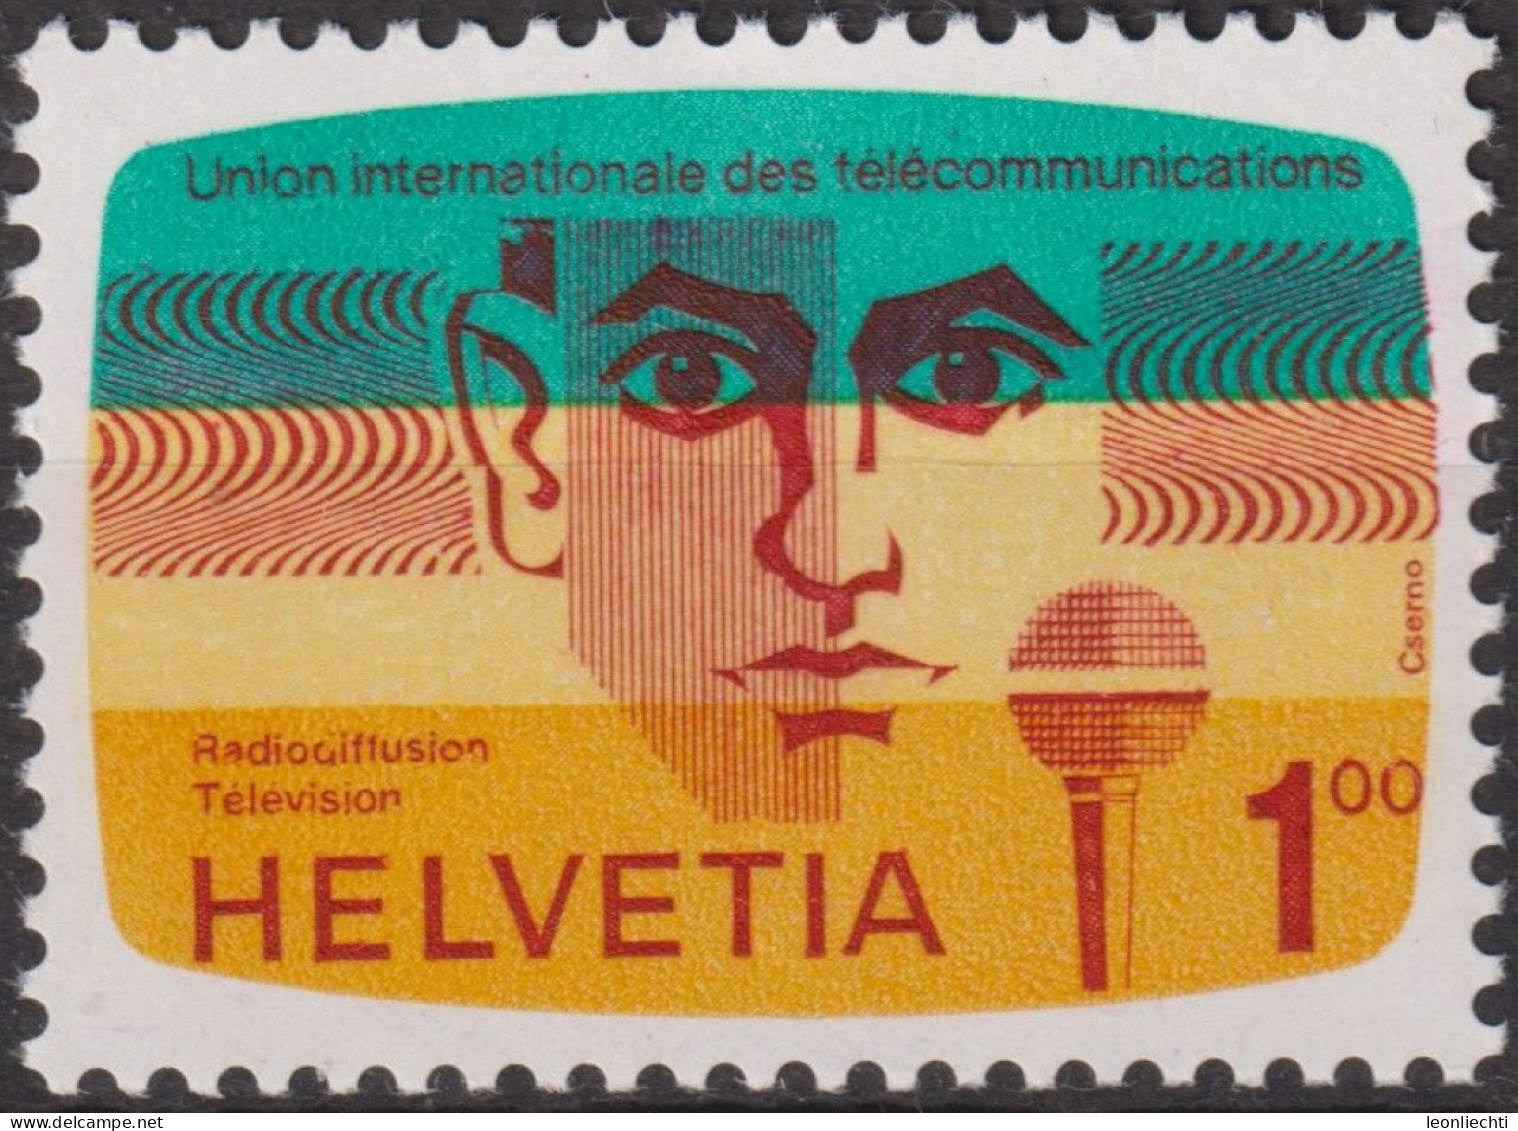 1976 CH / Dienstmarke UIT ** Mi:CH-UIT 13, Yt:CH S452, Zum:CH-UIT 13, 100 Jahre Internationale Fernmeldeunion (I.T.U.) - Dienstzegels